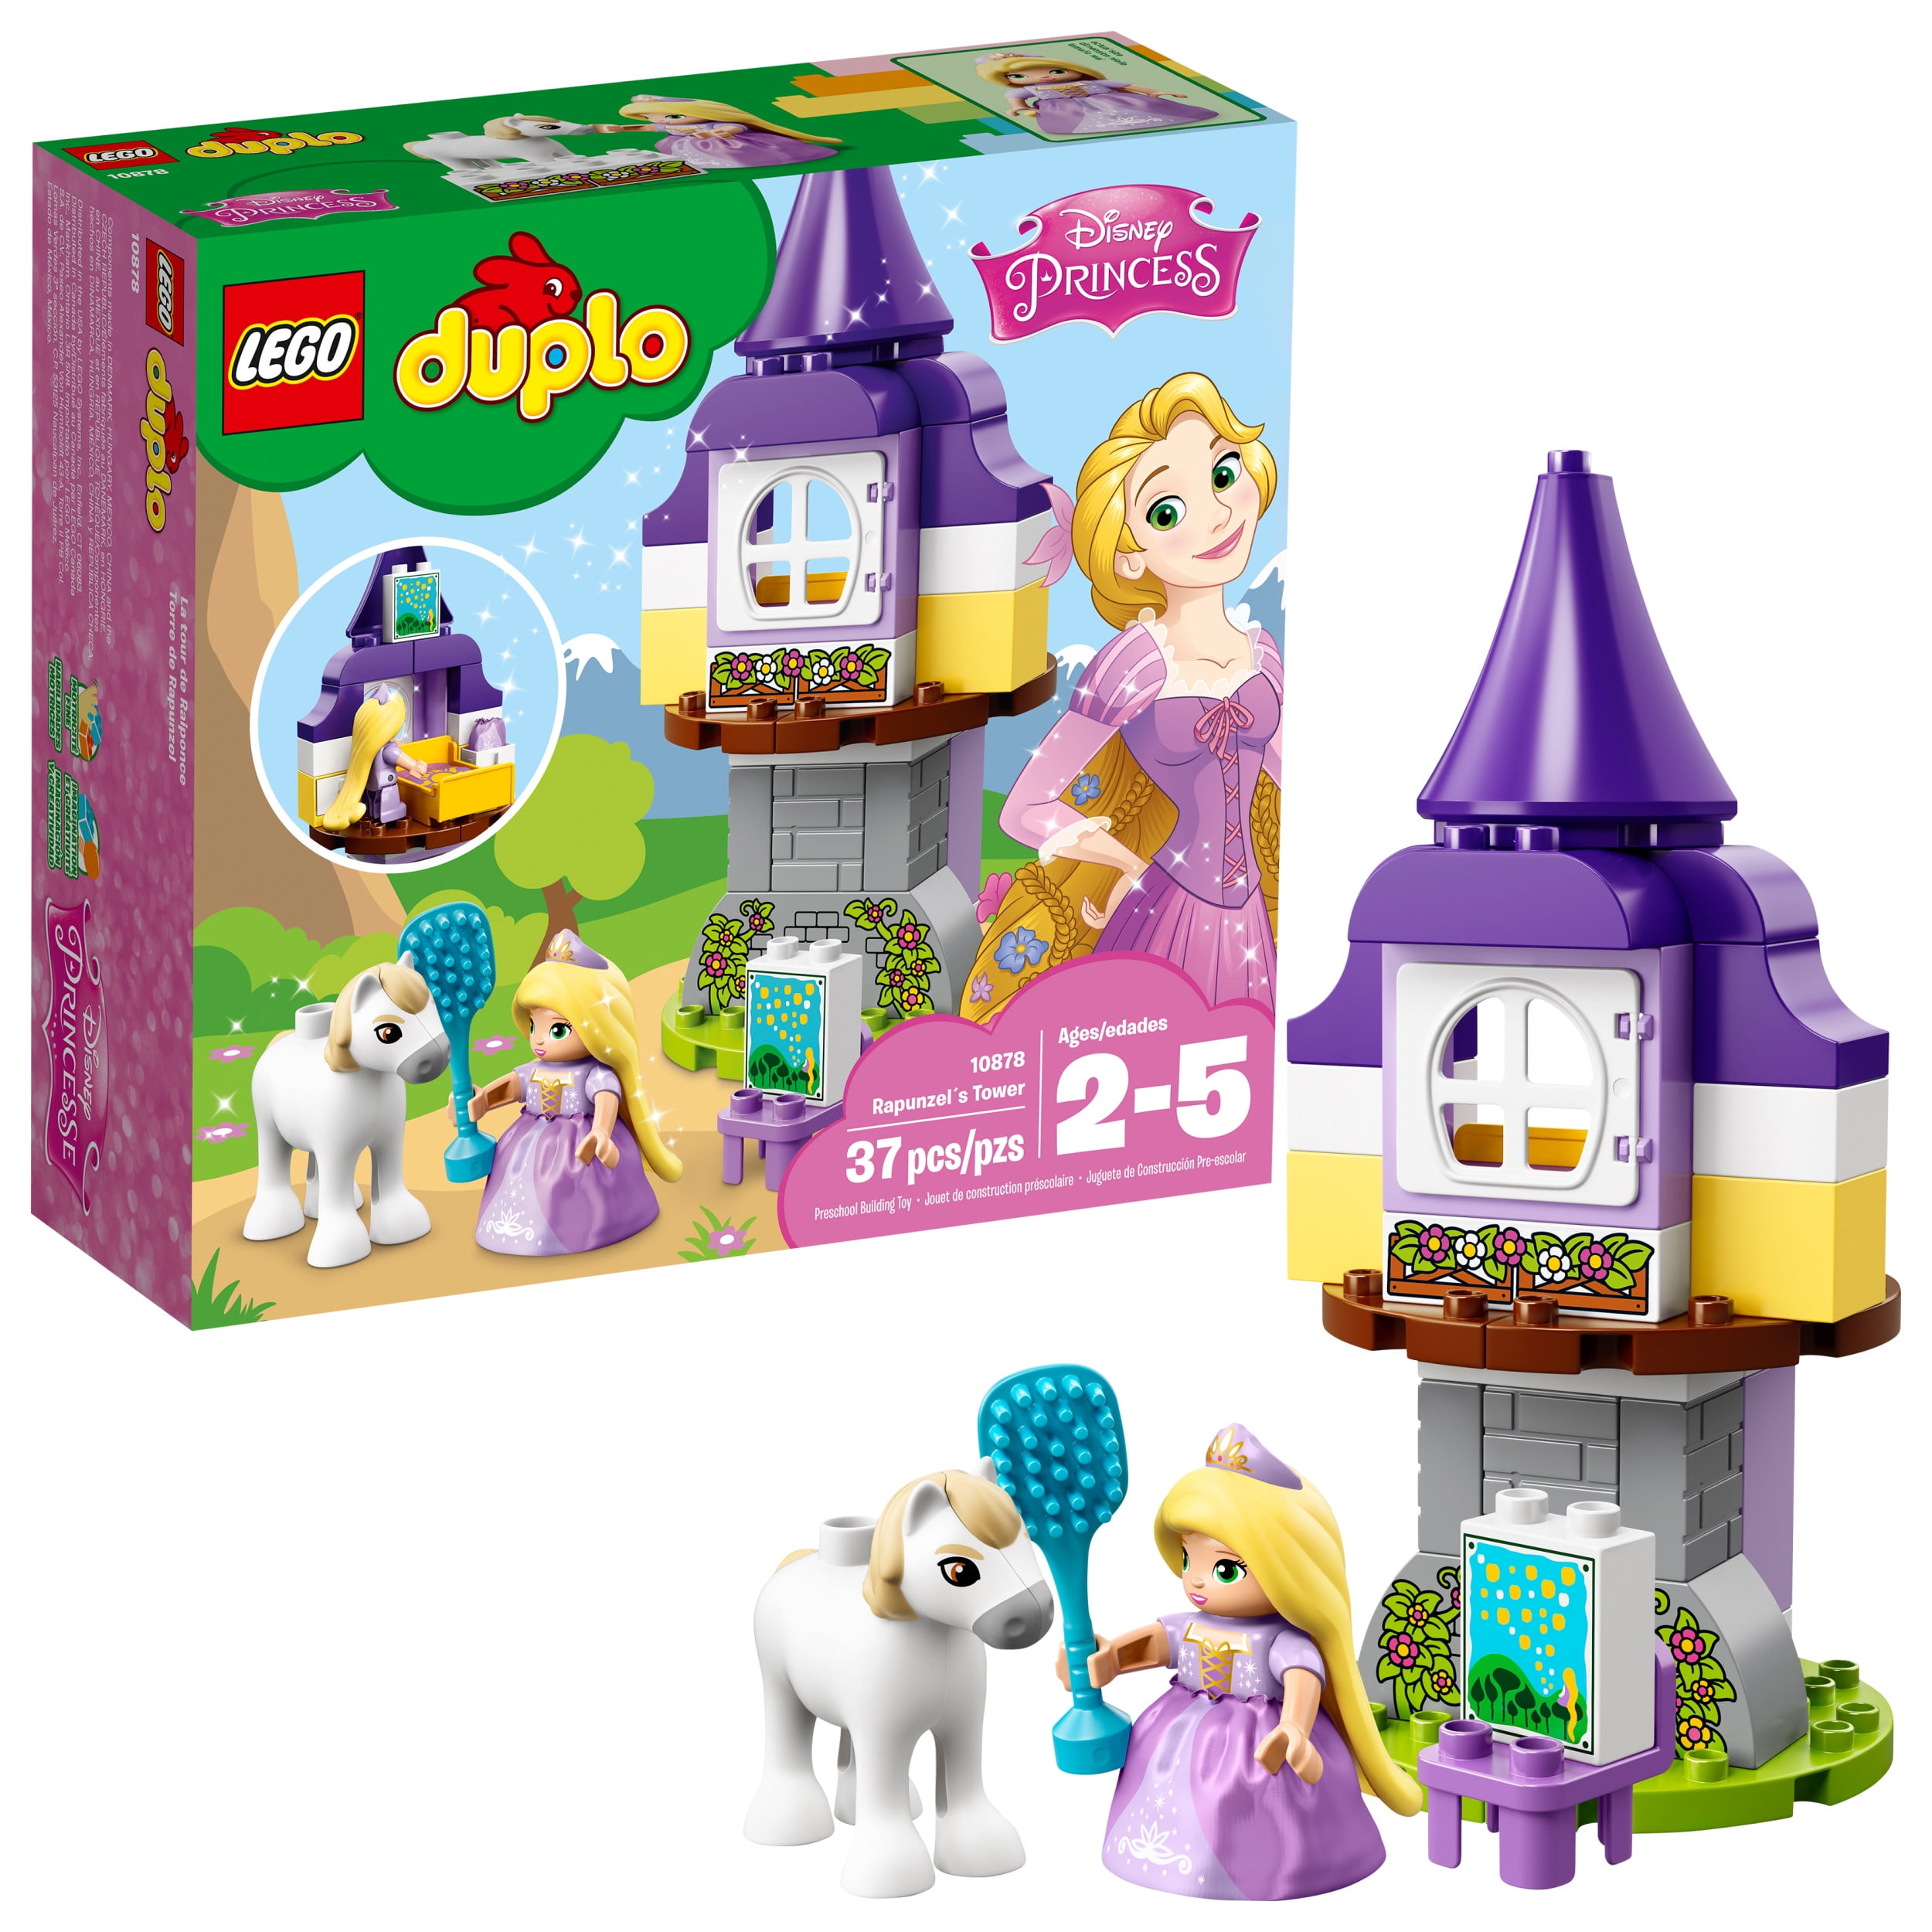 Slapper af Kriger relæ LEGO DUPLO Princess? Rapunzel´s Tower 10878 (37 Pieces) - Walmart.com